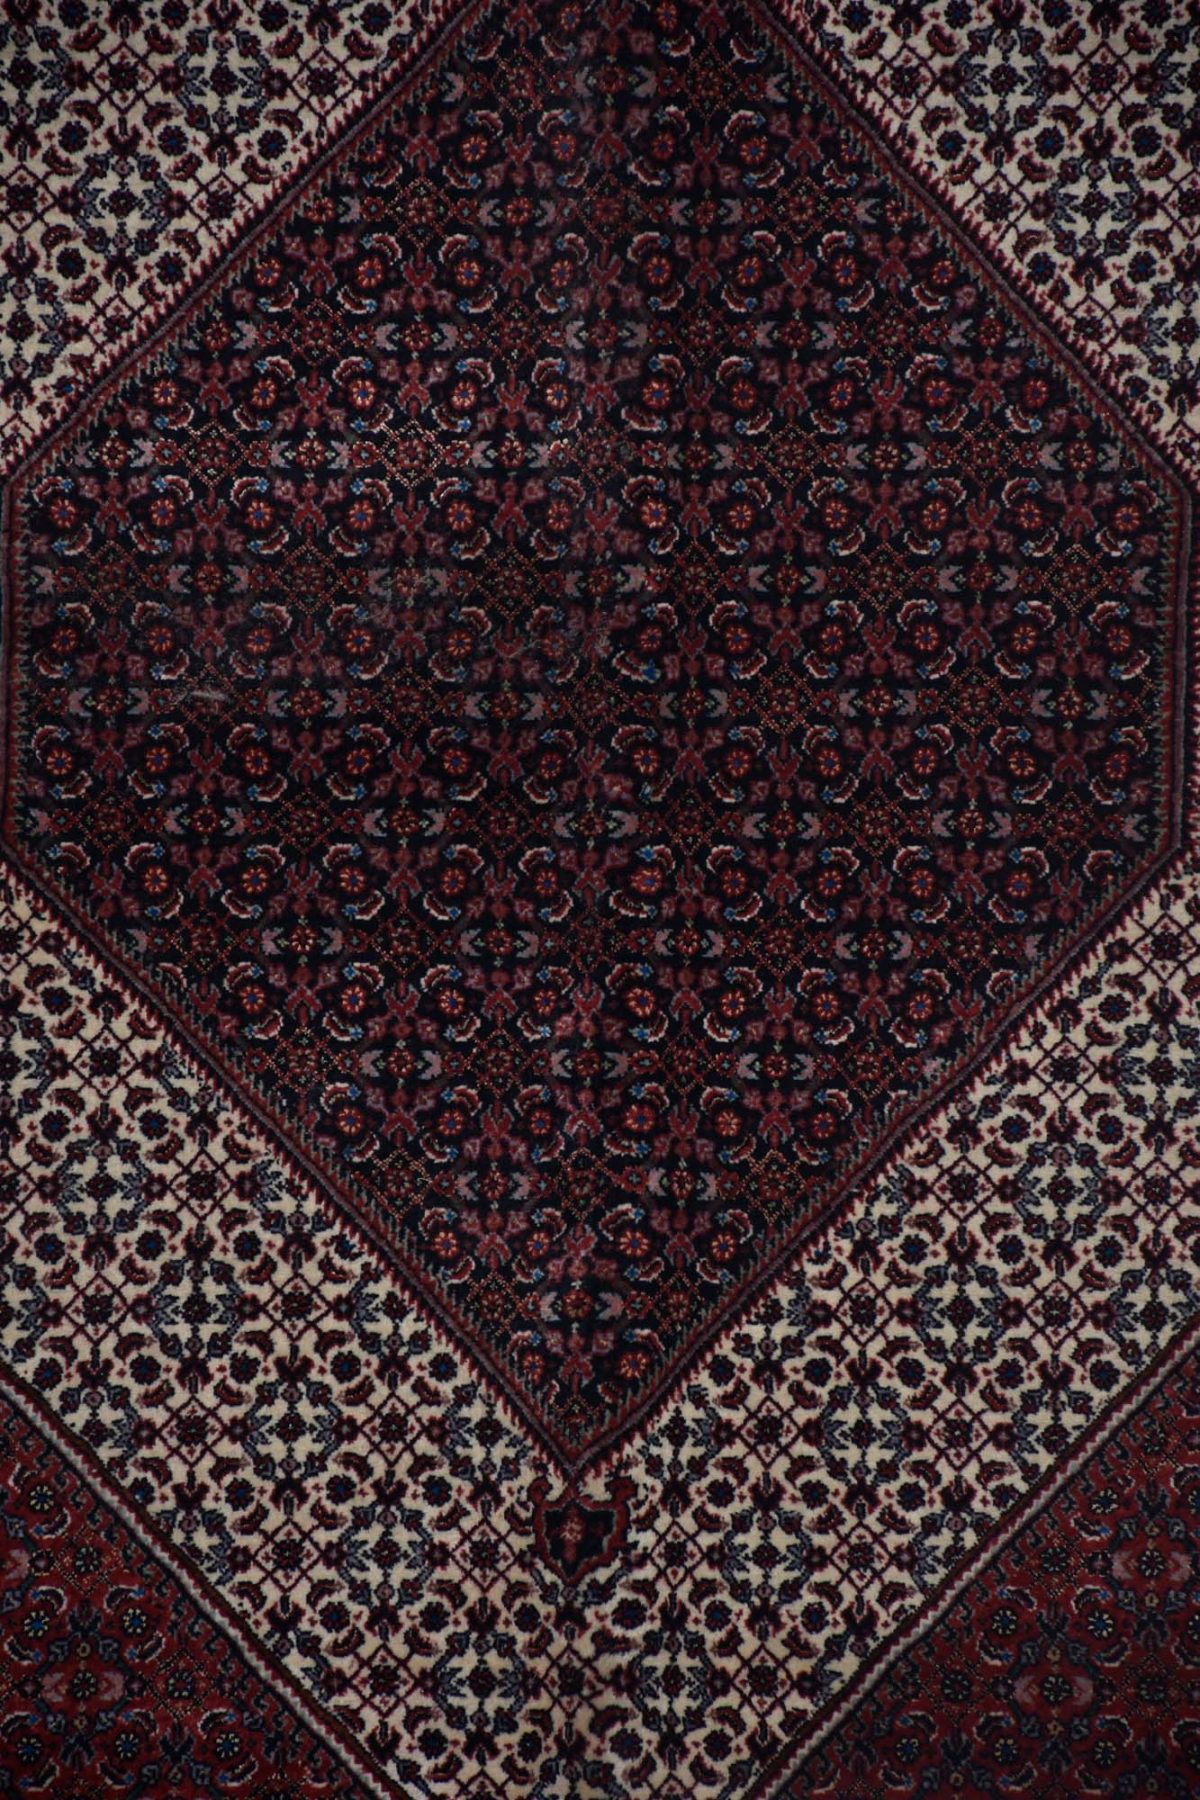 שטיח ביגאר בגווני אדום בז' וכחול כהה